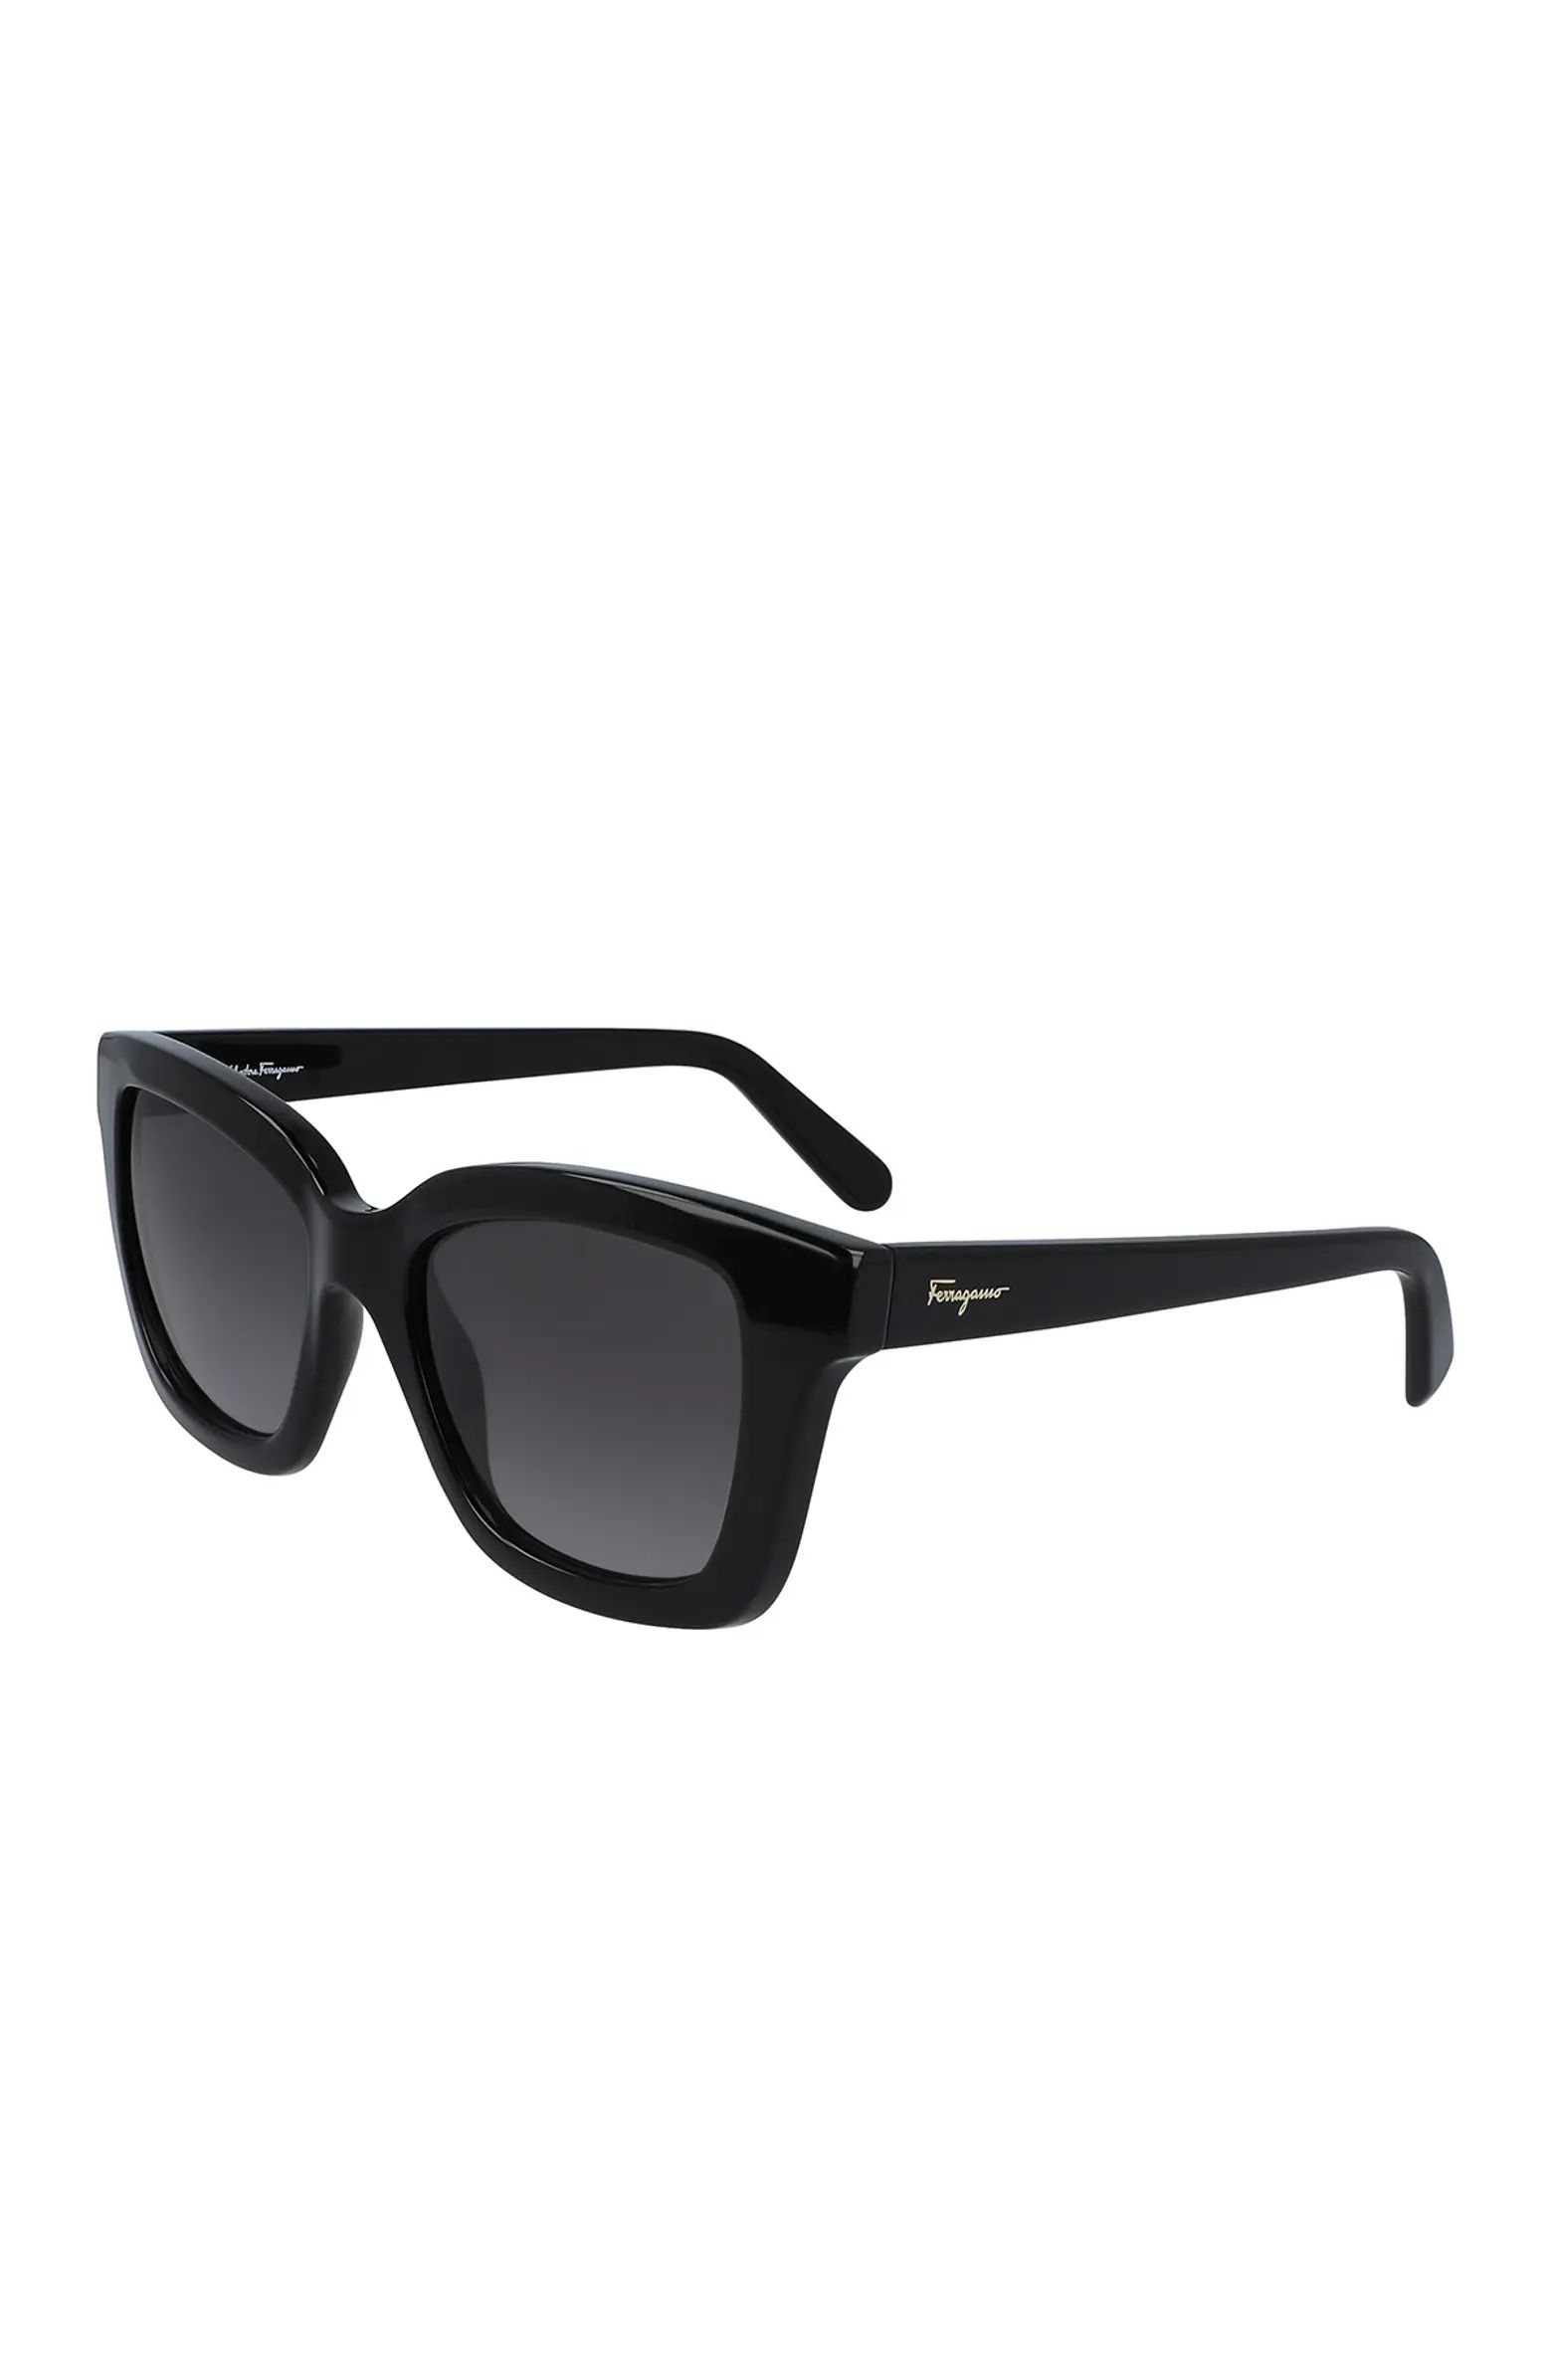 Salvatore Ferragamo 53mm Square Sunglasses | Nordstromrack | Nordstrom Rack